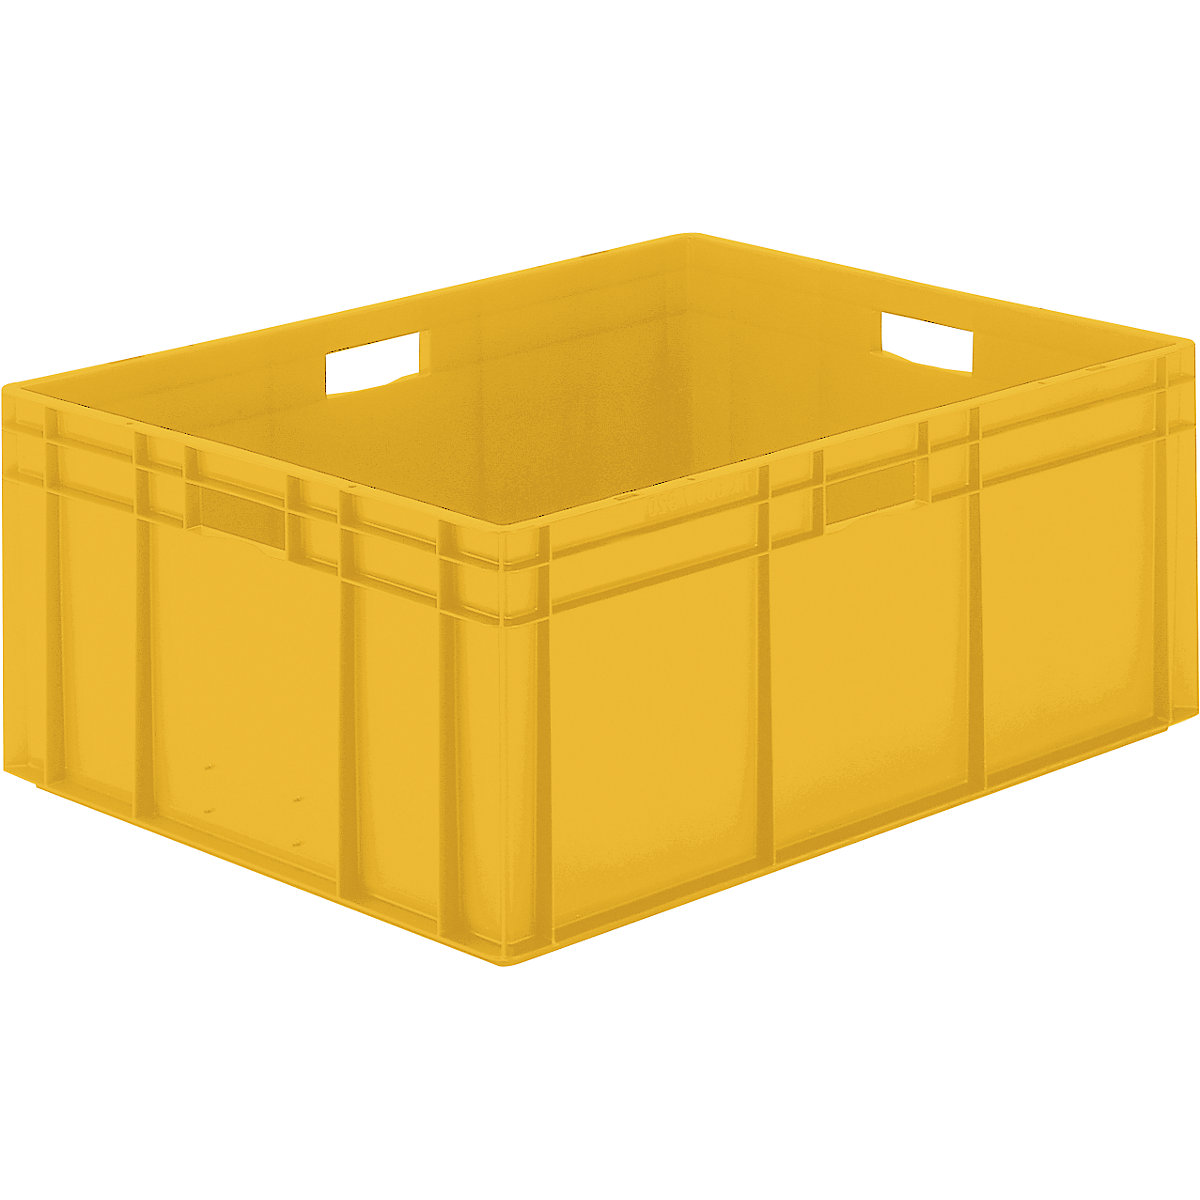 Euro-szabvány méretű egymásra rakható tároló, zárt falak és alj, h x szé x ma 800 x 600 x 320 mm, sárga, cs. e. 2 db-7